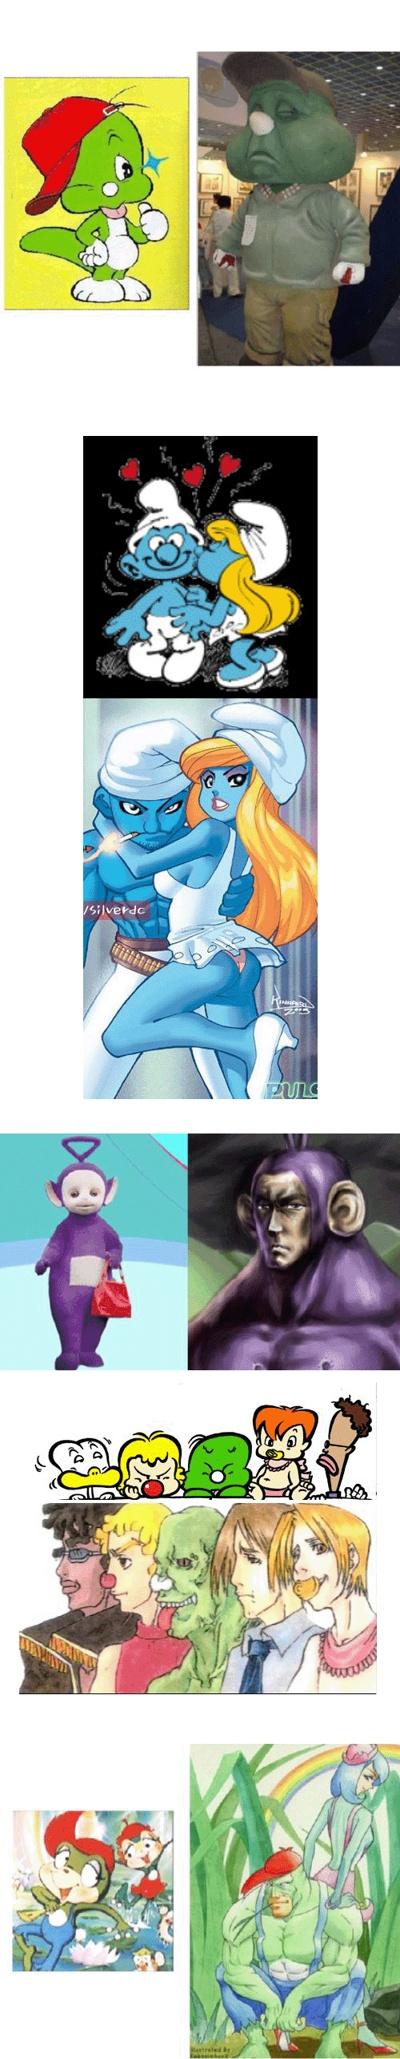 만화속 캐릭터들이 성장한 후의 모습